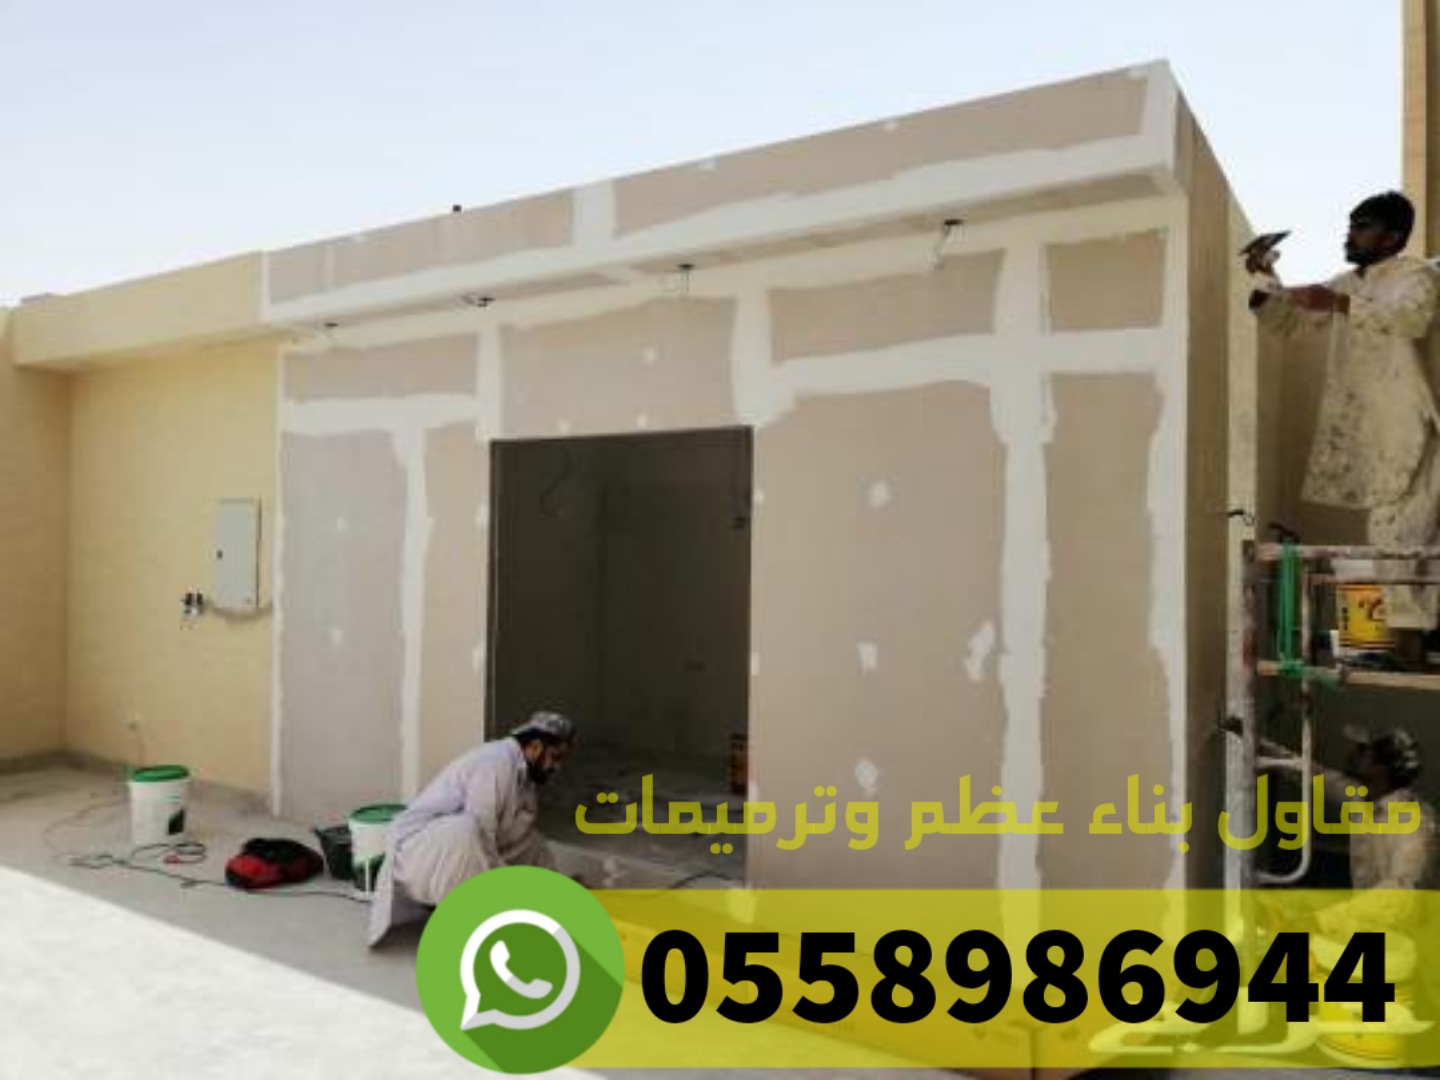 ترميم منازل و بناء عظم في جدة, 0558986944 P_2486vx6aj4